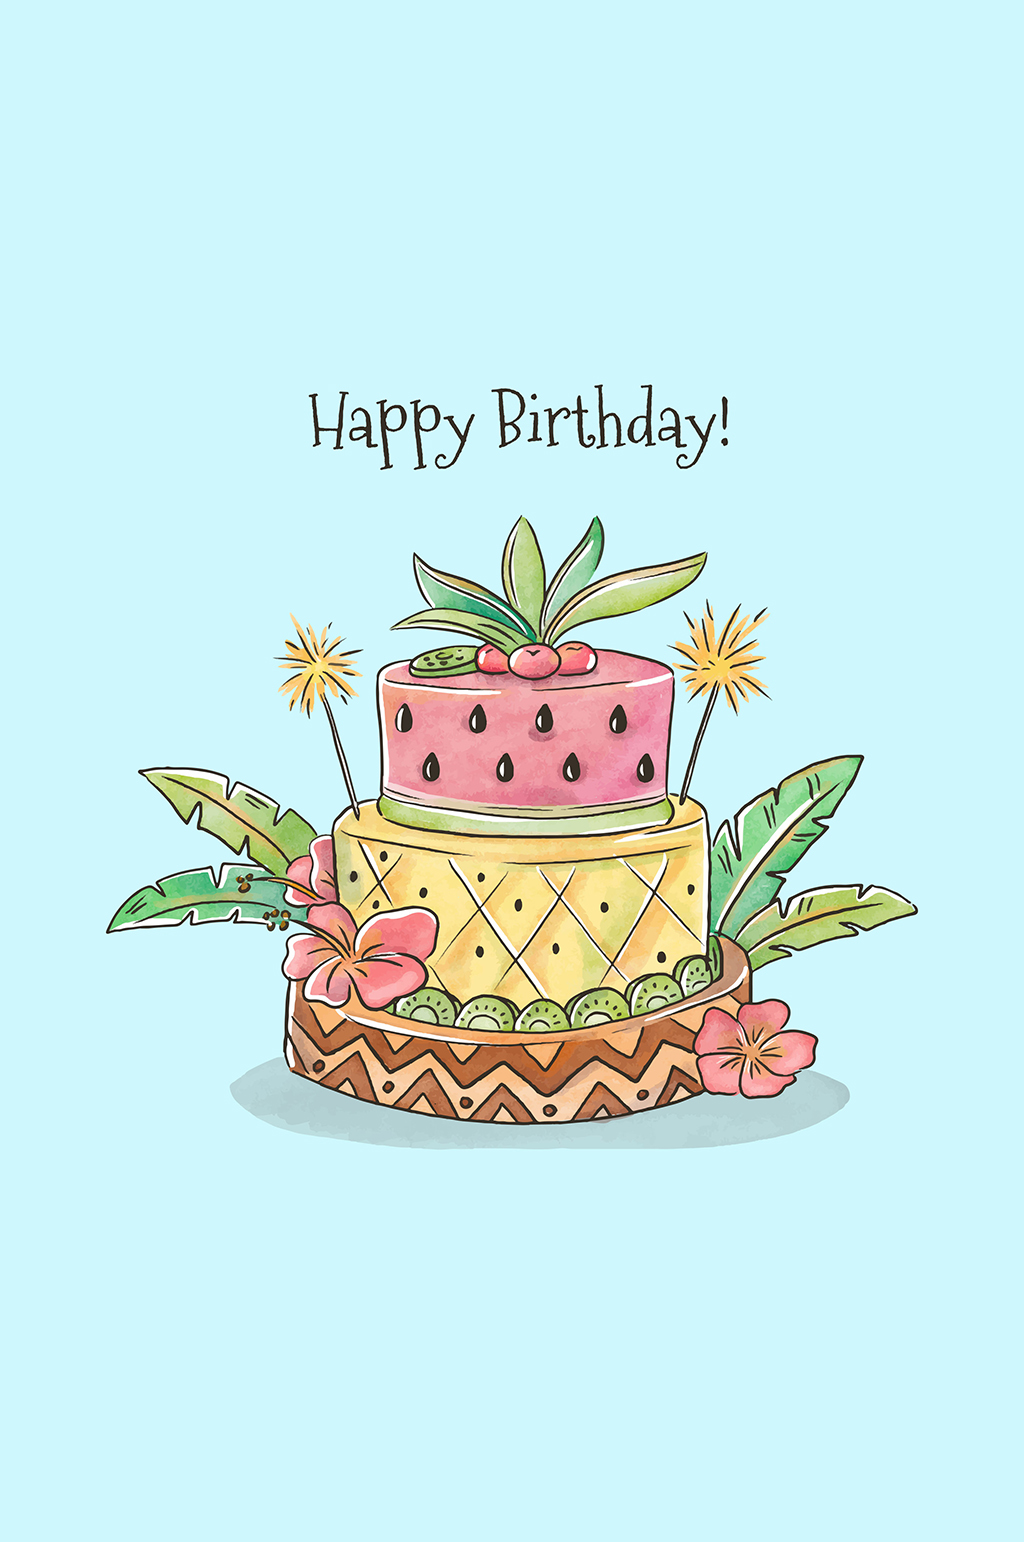 生日蛋糕卡通图简单图片